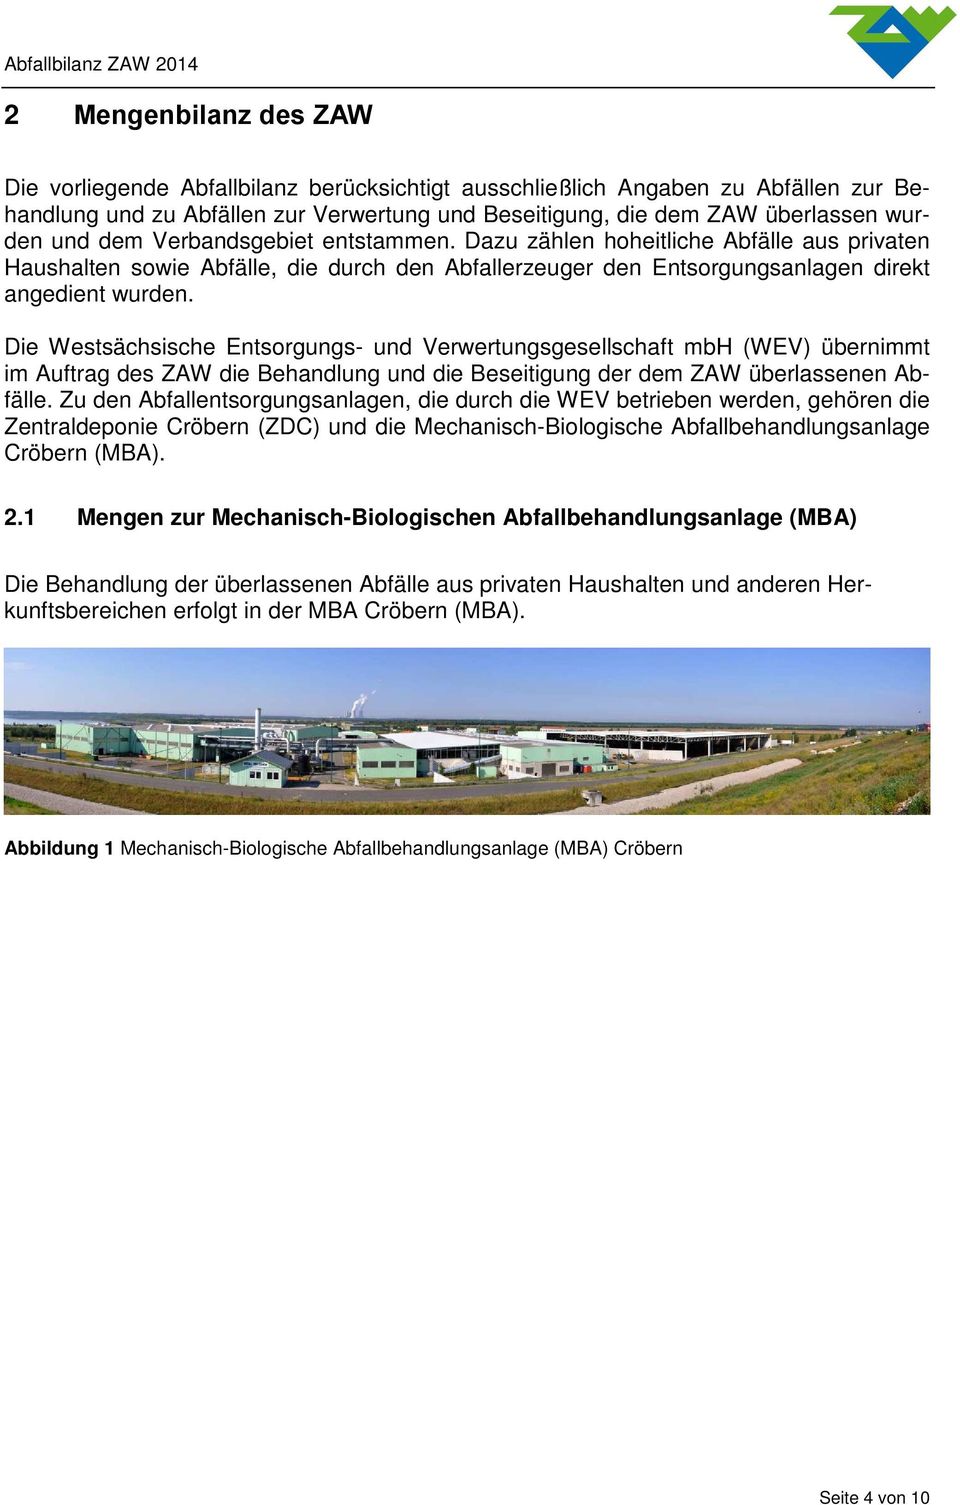 Die Westsächsische Entsorgungs- und Verwertungsgesellschaft mbh (WEV) übernimmt im Auftrag des ZAW die Behandlung und die Beseitigung der dem ZAW überlassenen Abfälle.